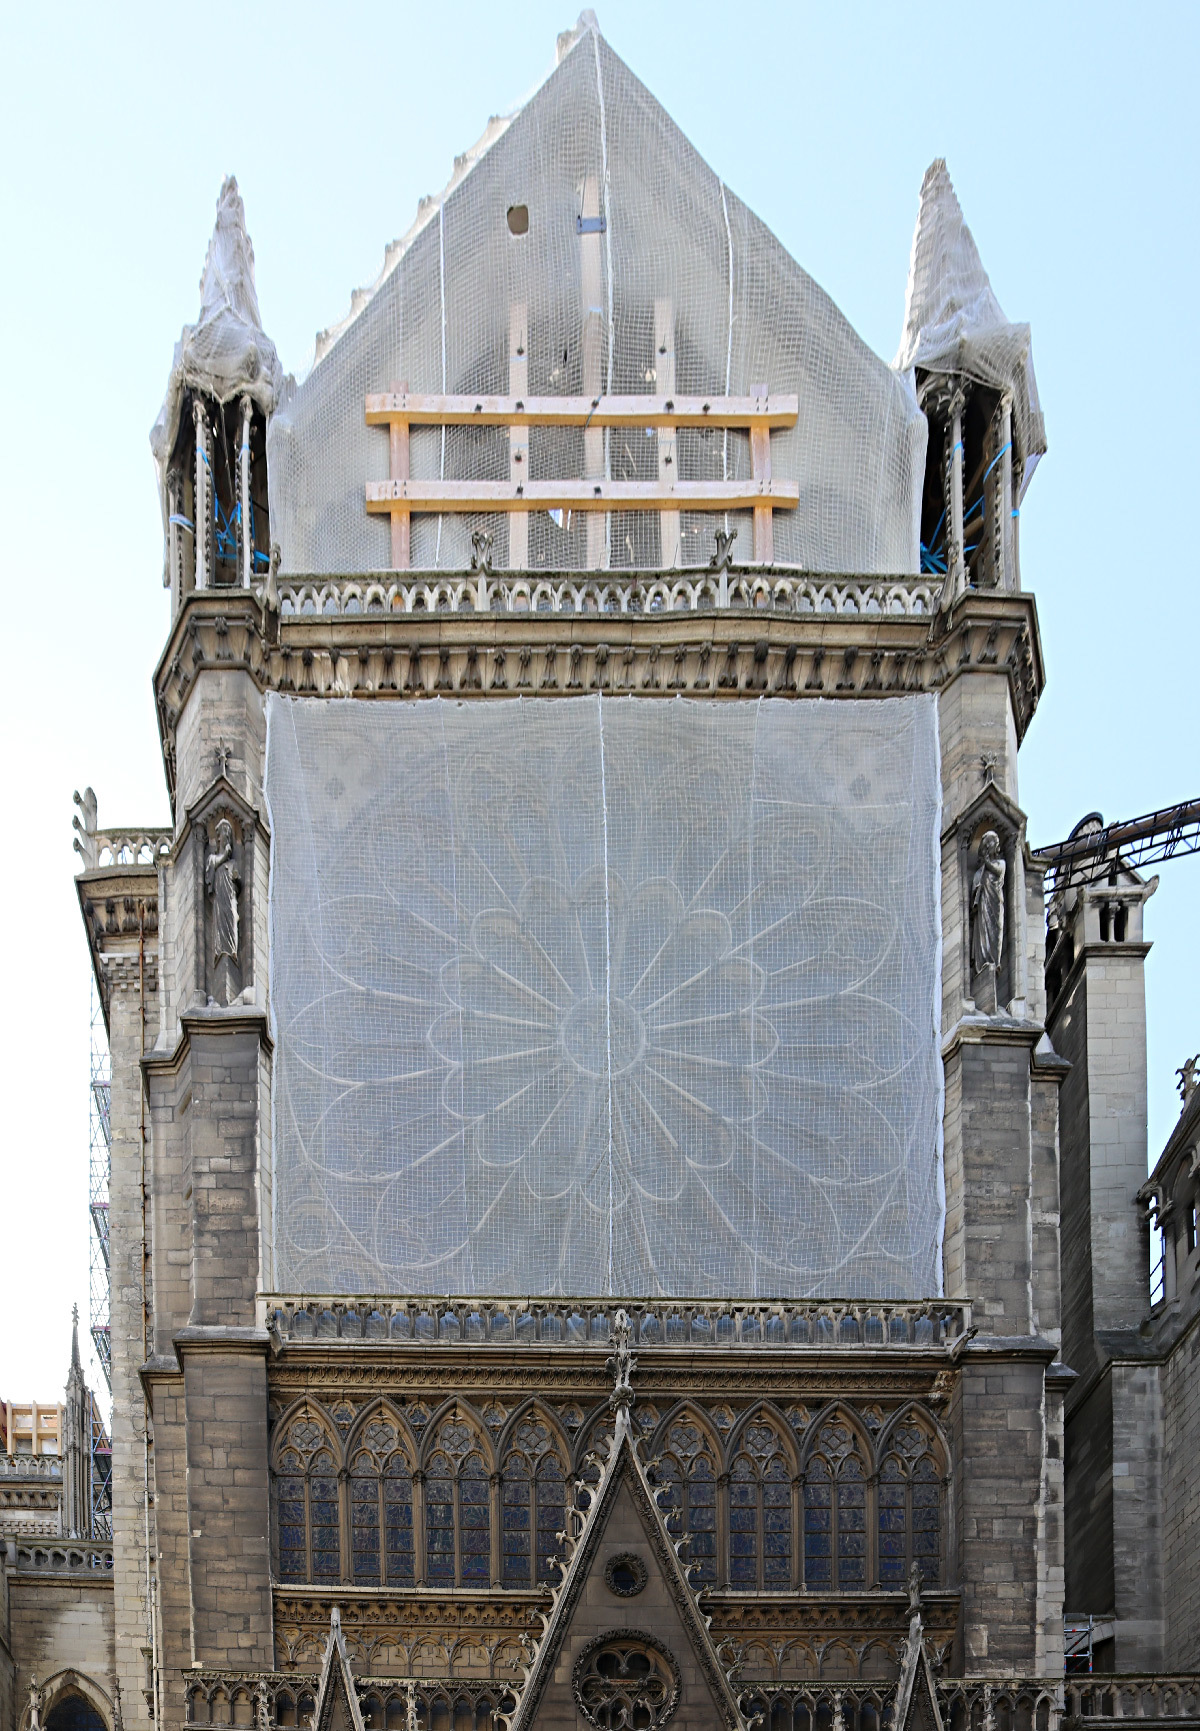 Cathédrale Notre-Dame de Paris, pignon nord du transept, rosace avec bâche et vitraux, vue extérieure - Septembre 2019 © Vincent Laganier